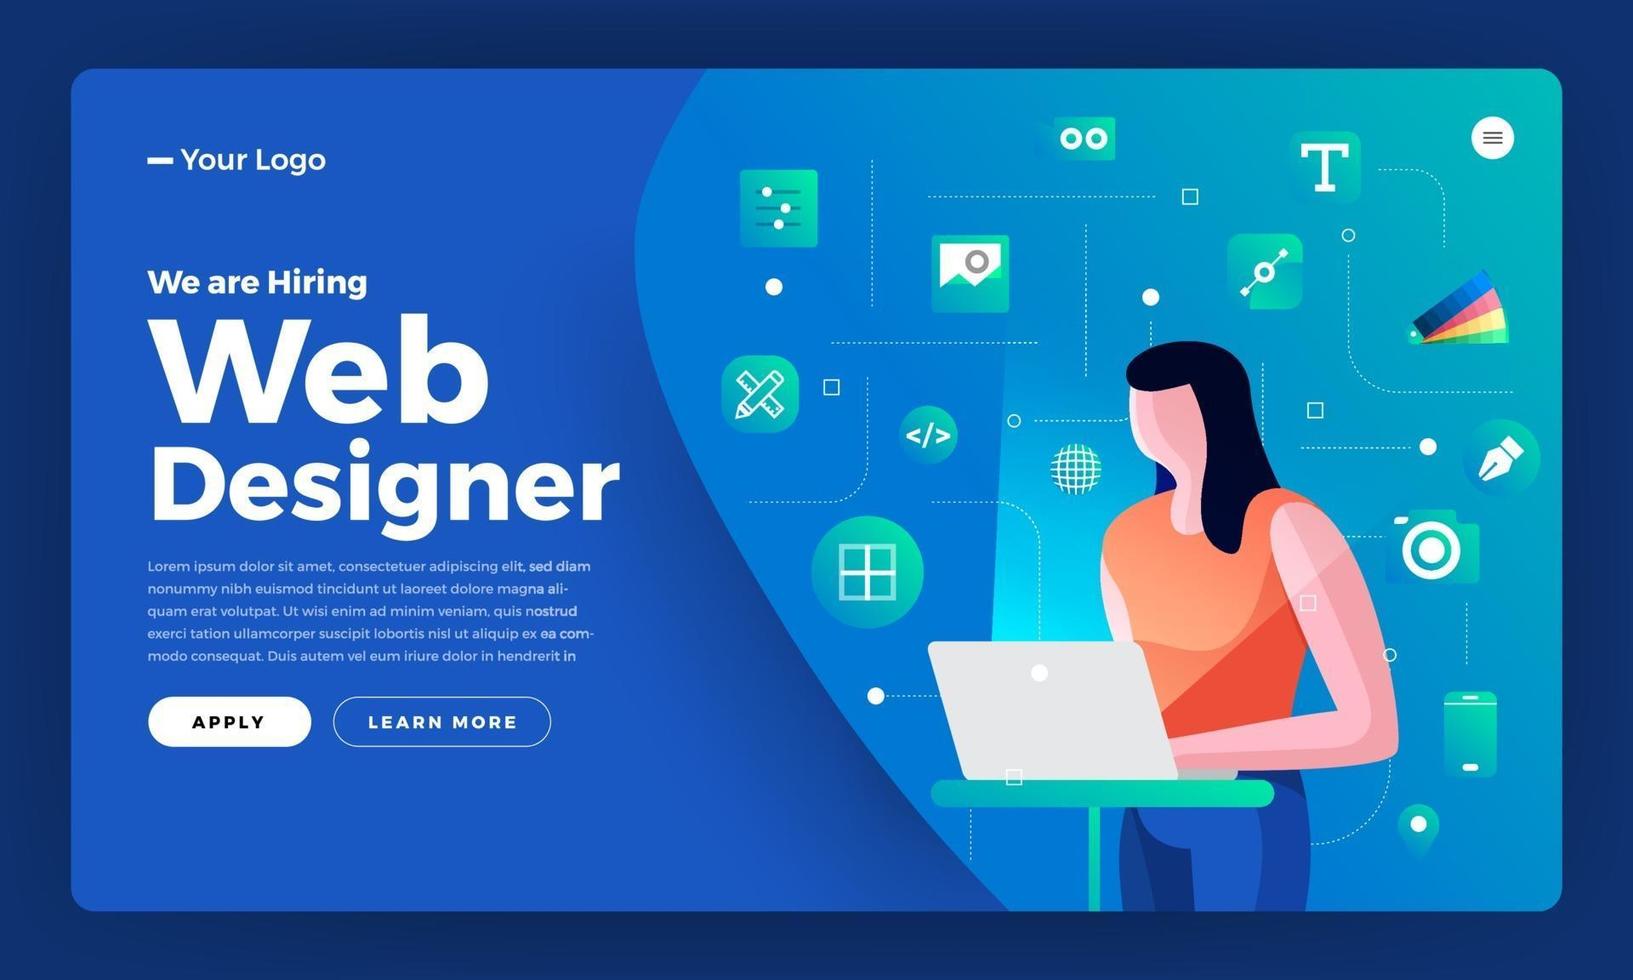 målsida för webbdesigners anställningsmeddelande vektor